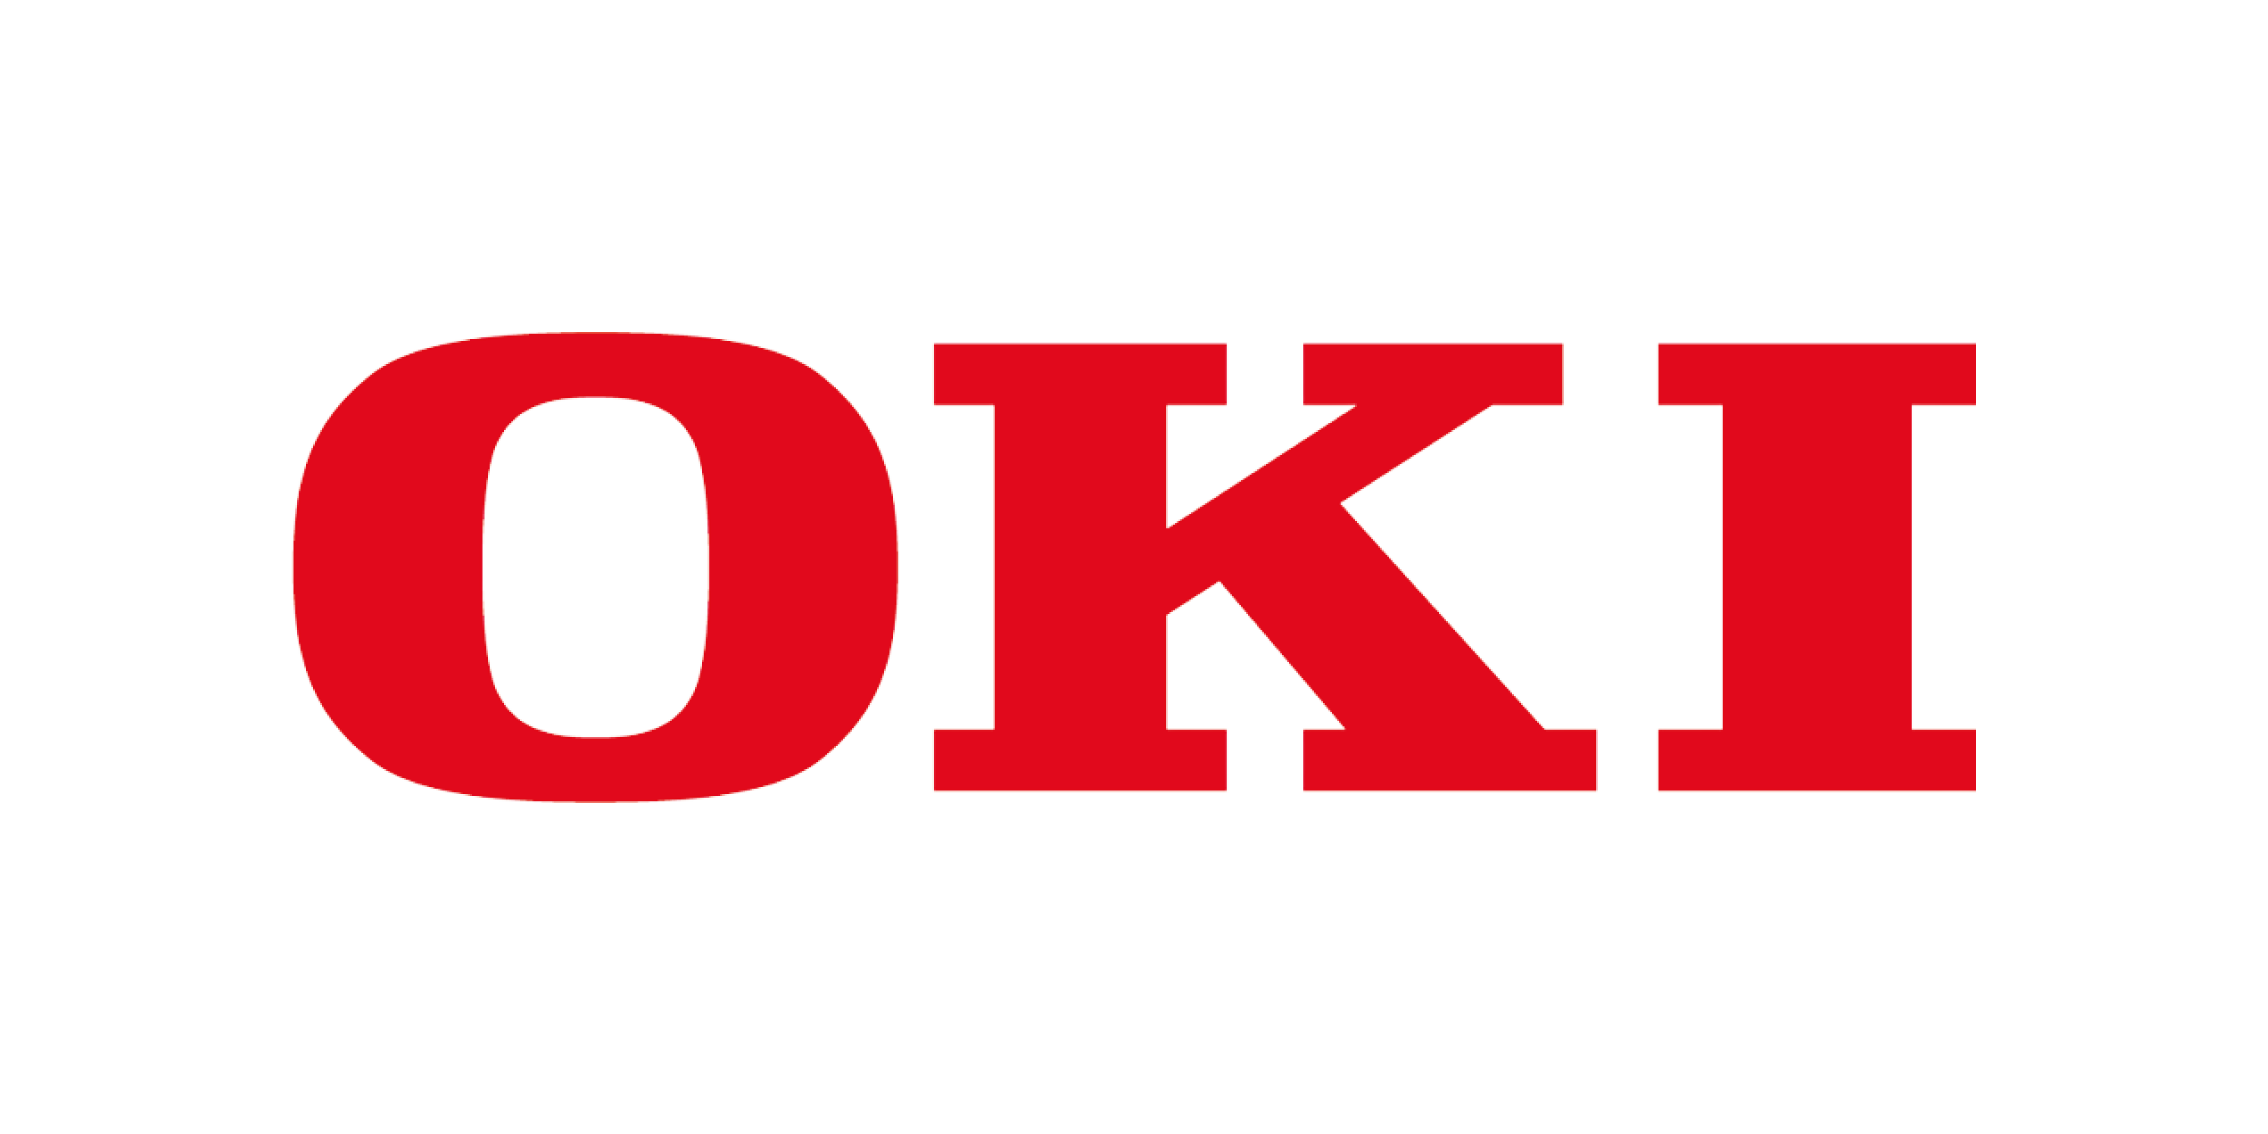 Logo Oki